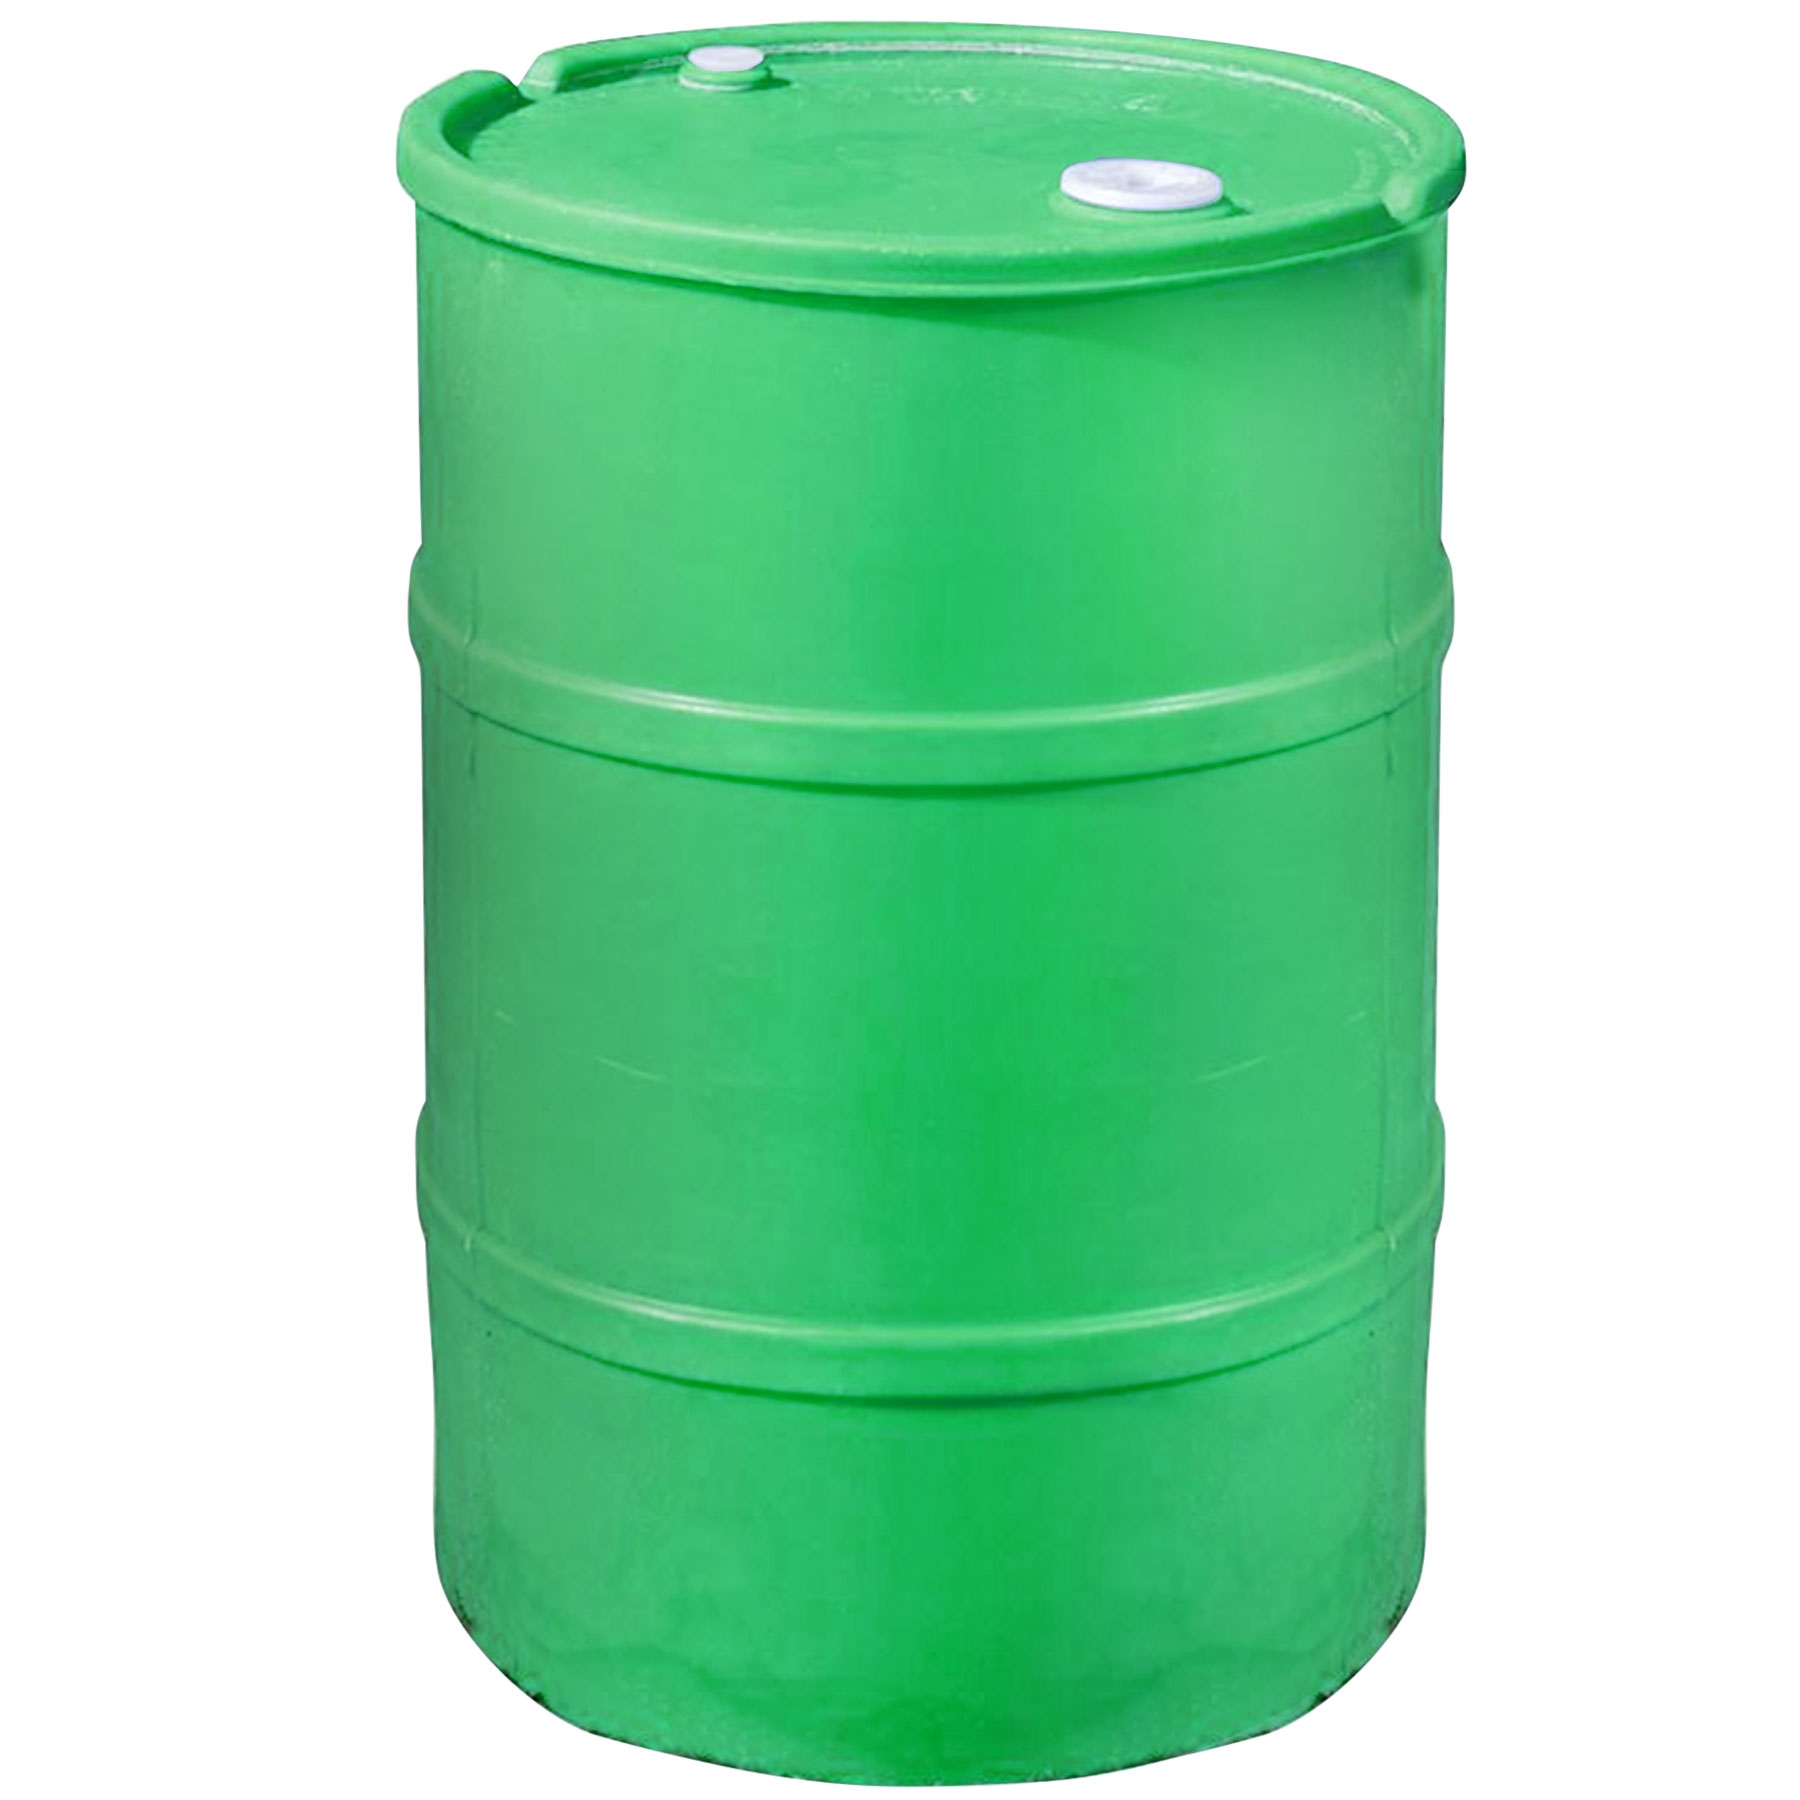 30 Gallon Green Plastic Tight Head Drum - The Cary Company